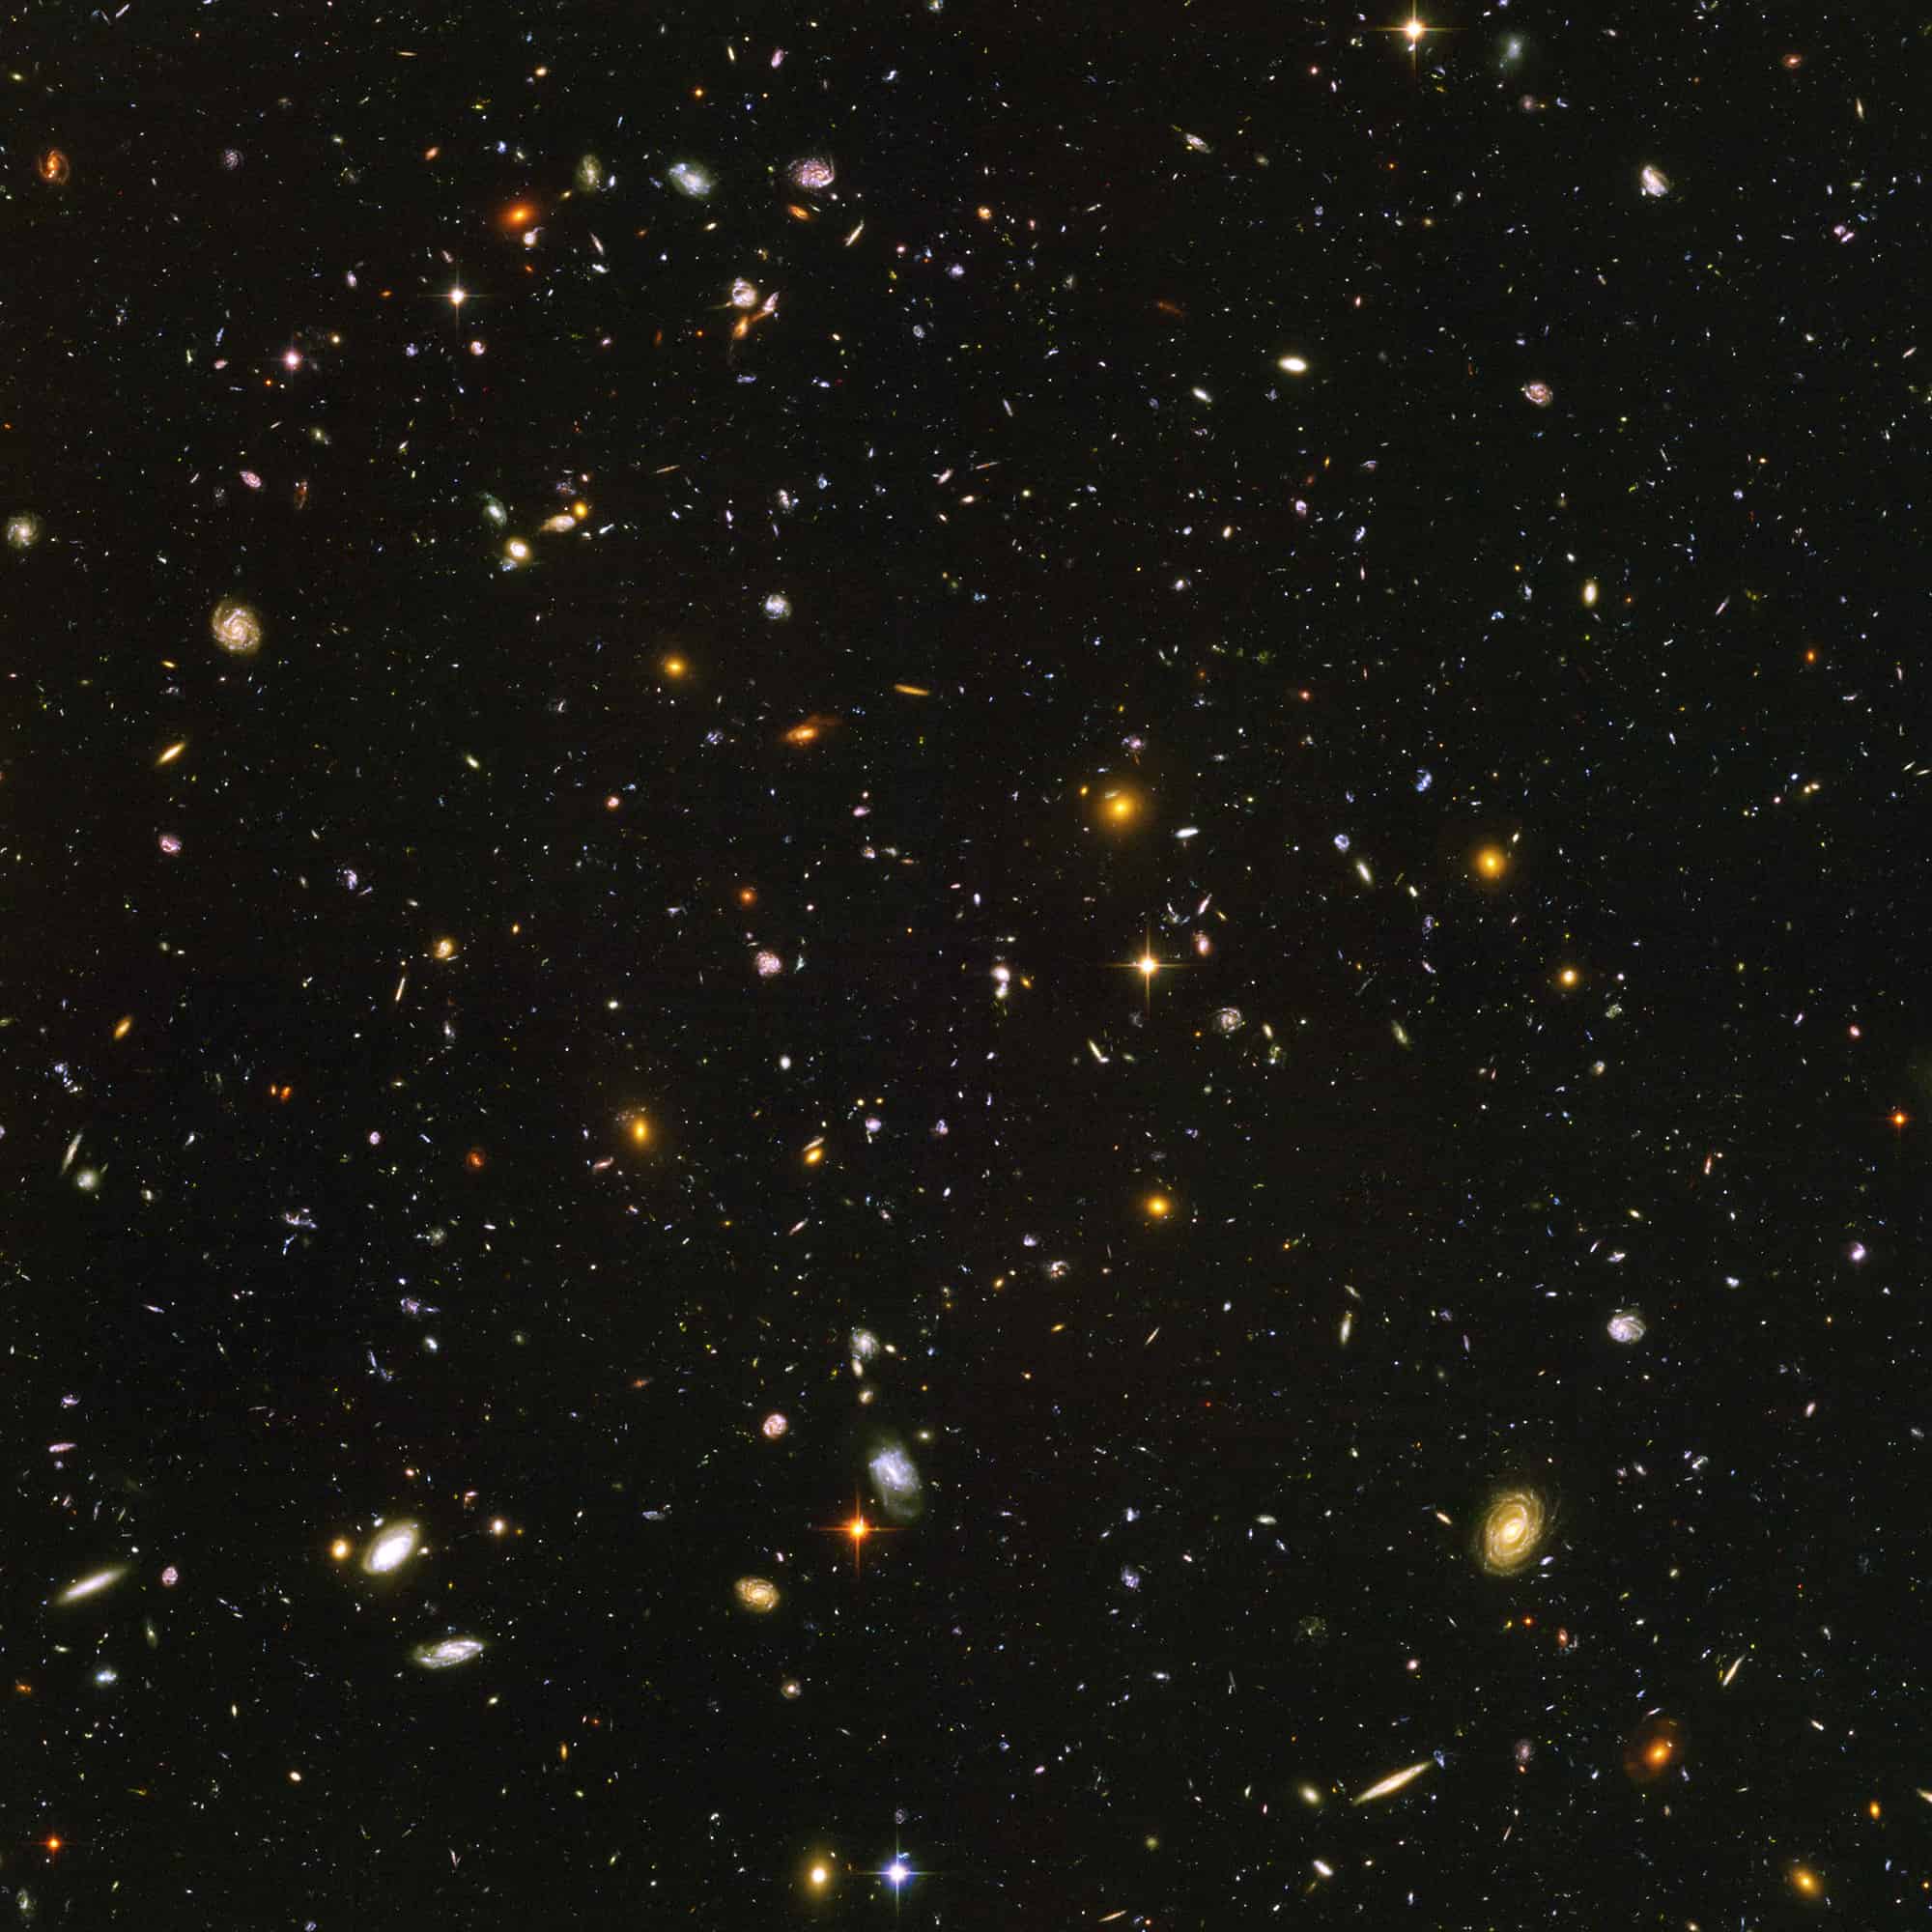 Esta imagen del Telescopio Espacial Hubble, conocida como Campo Ultra Profundo del Hubble, revela unas 10.000 galaxias y combina luz ultravioleta, visible e infrarroja cercana. Dos programas que usarán el Telescopio Espacial James Webb agregarán más detalles a esta imagen, capturando miles de galaxias adicionales en un rango más completo de luz infrarroja.